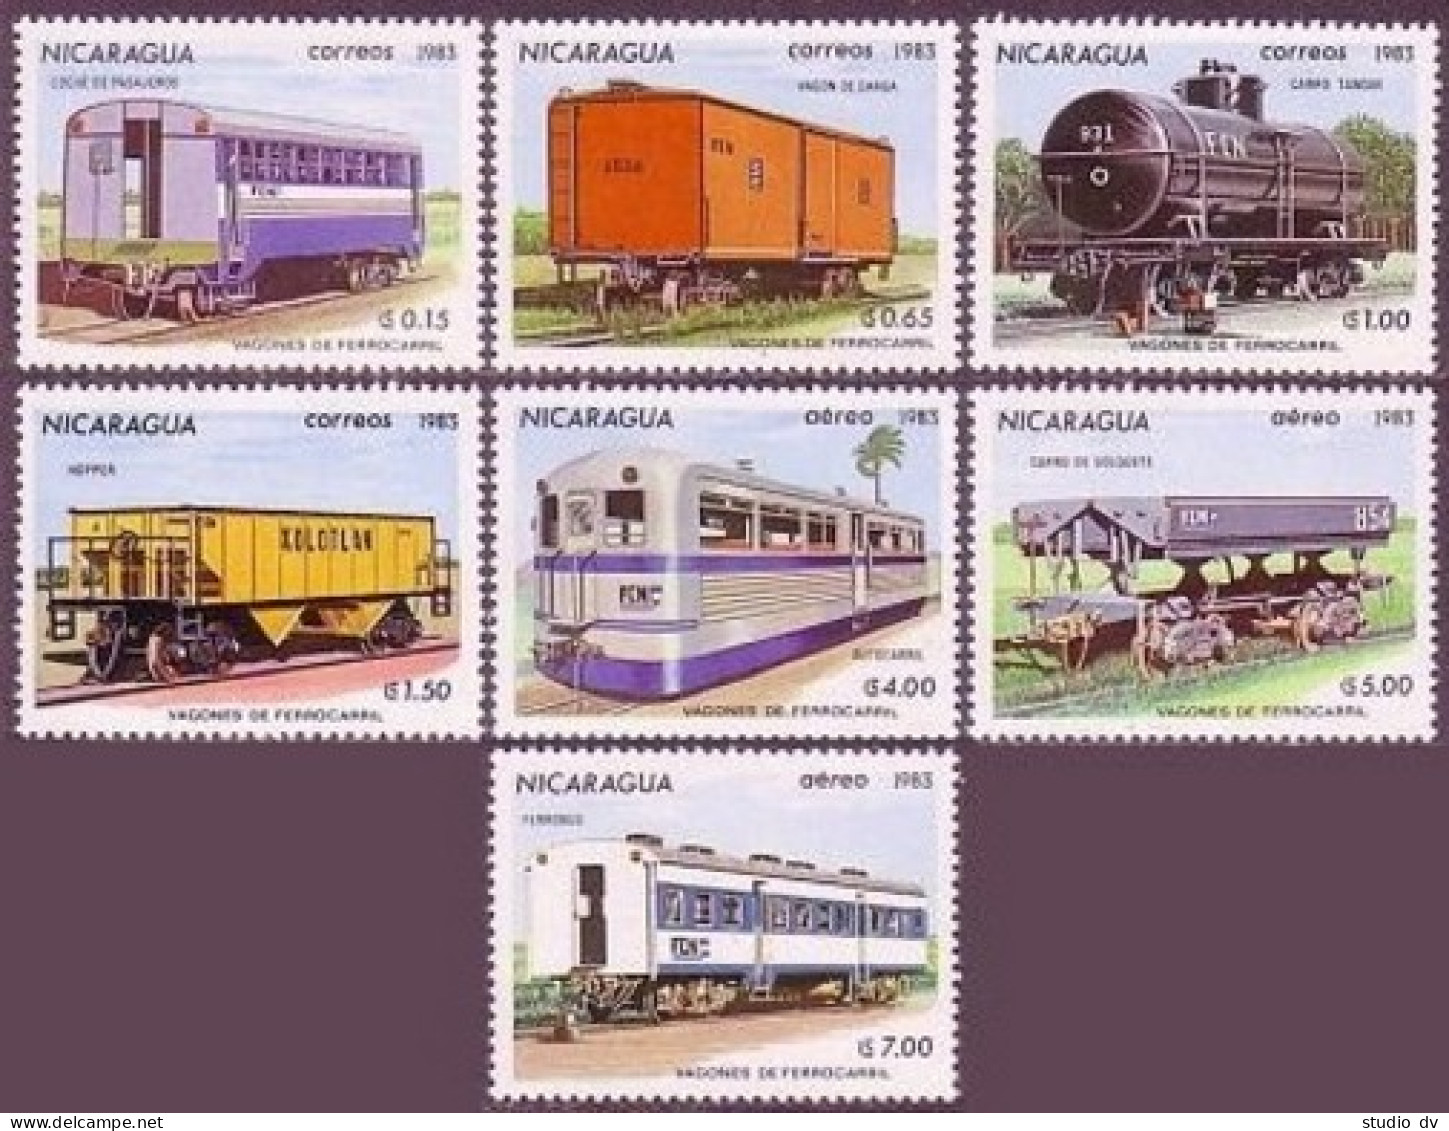 Nicaragua 1241-1247, MNH. Michel 2387-2393. Railroad Cars, 1983. - Nicaragua